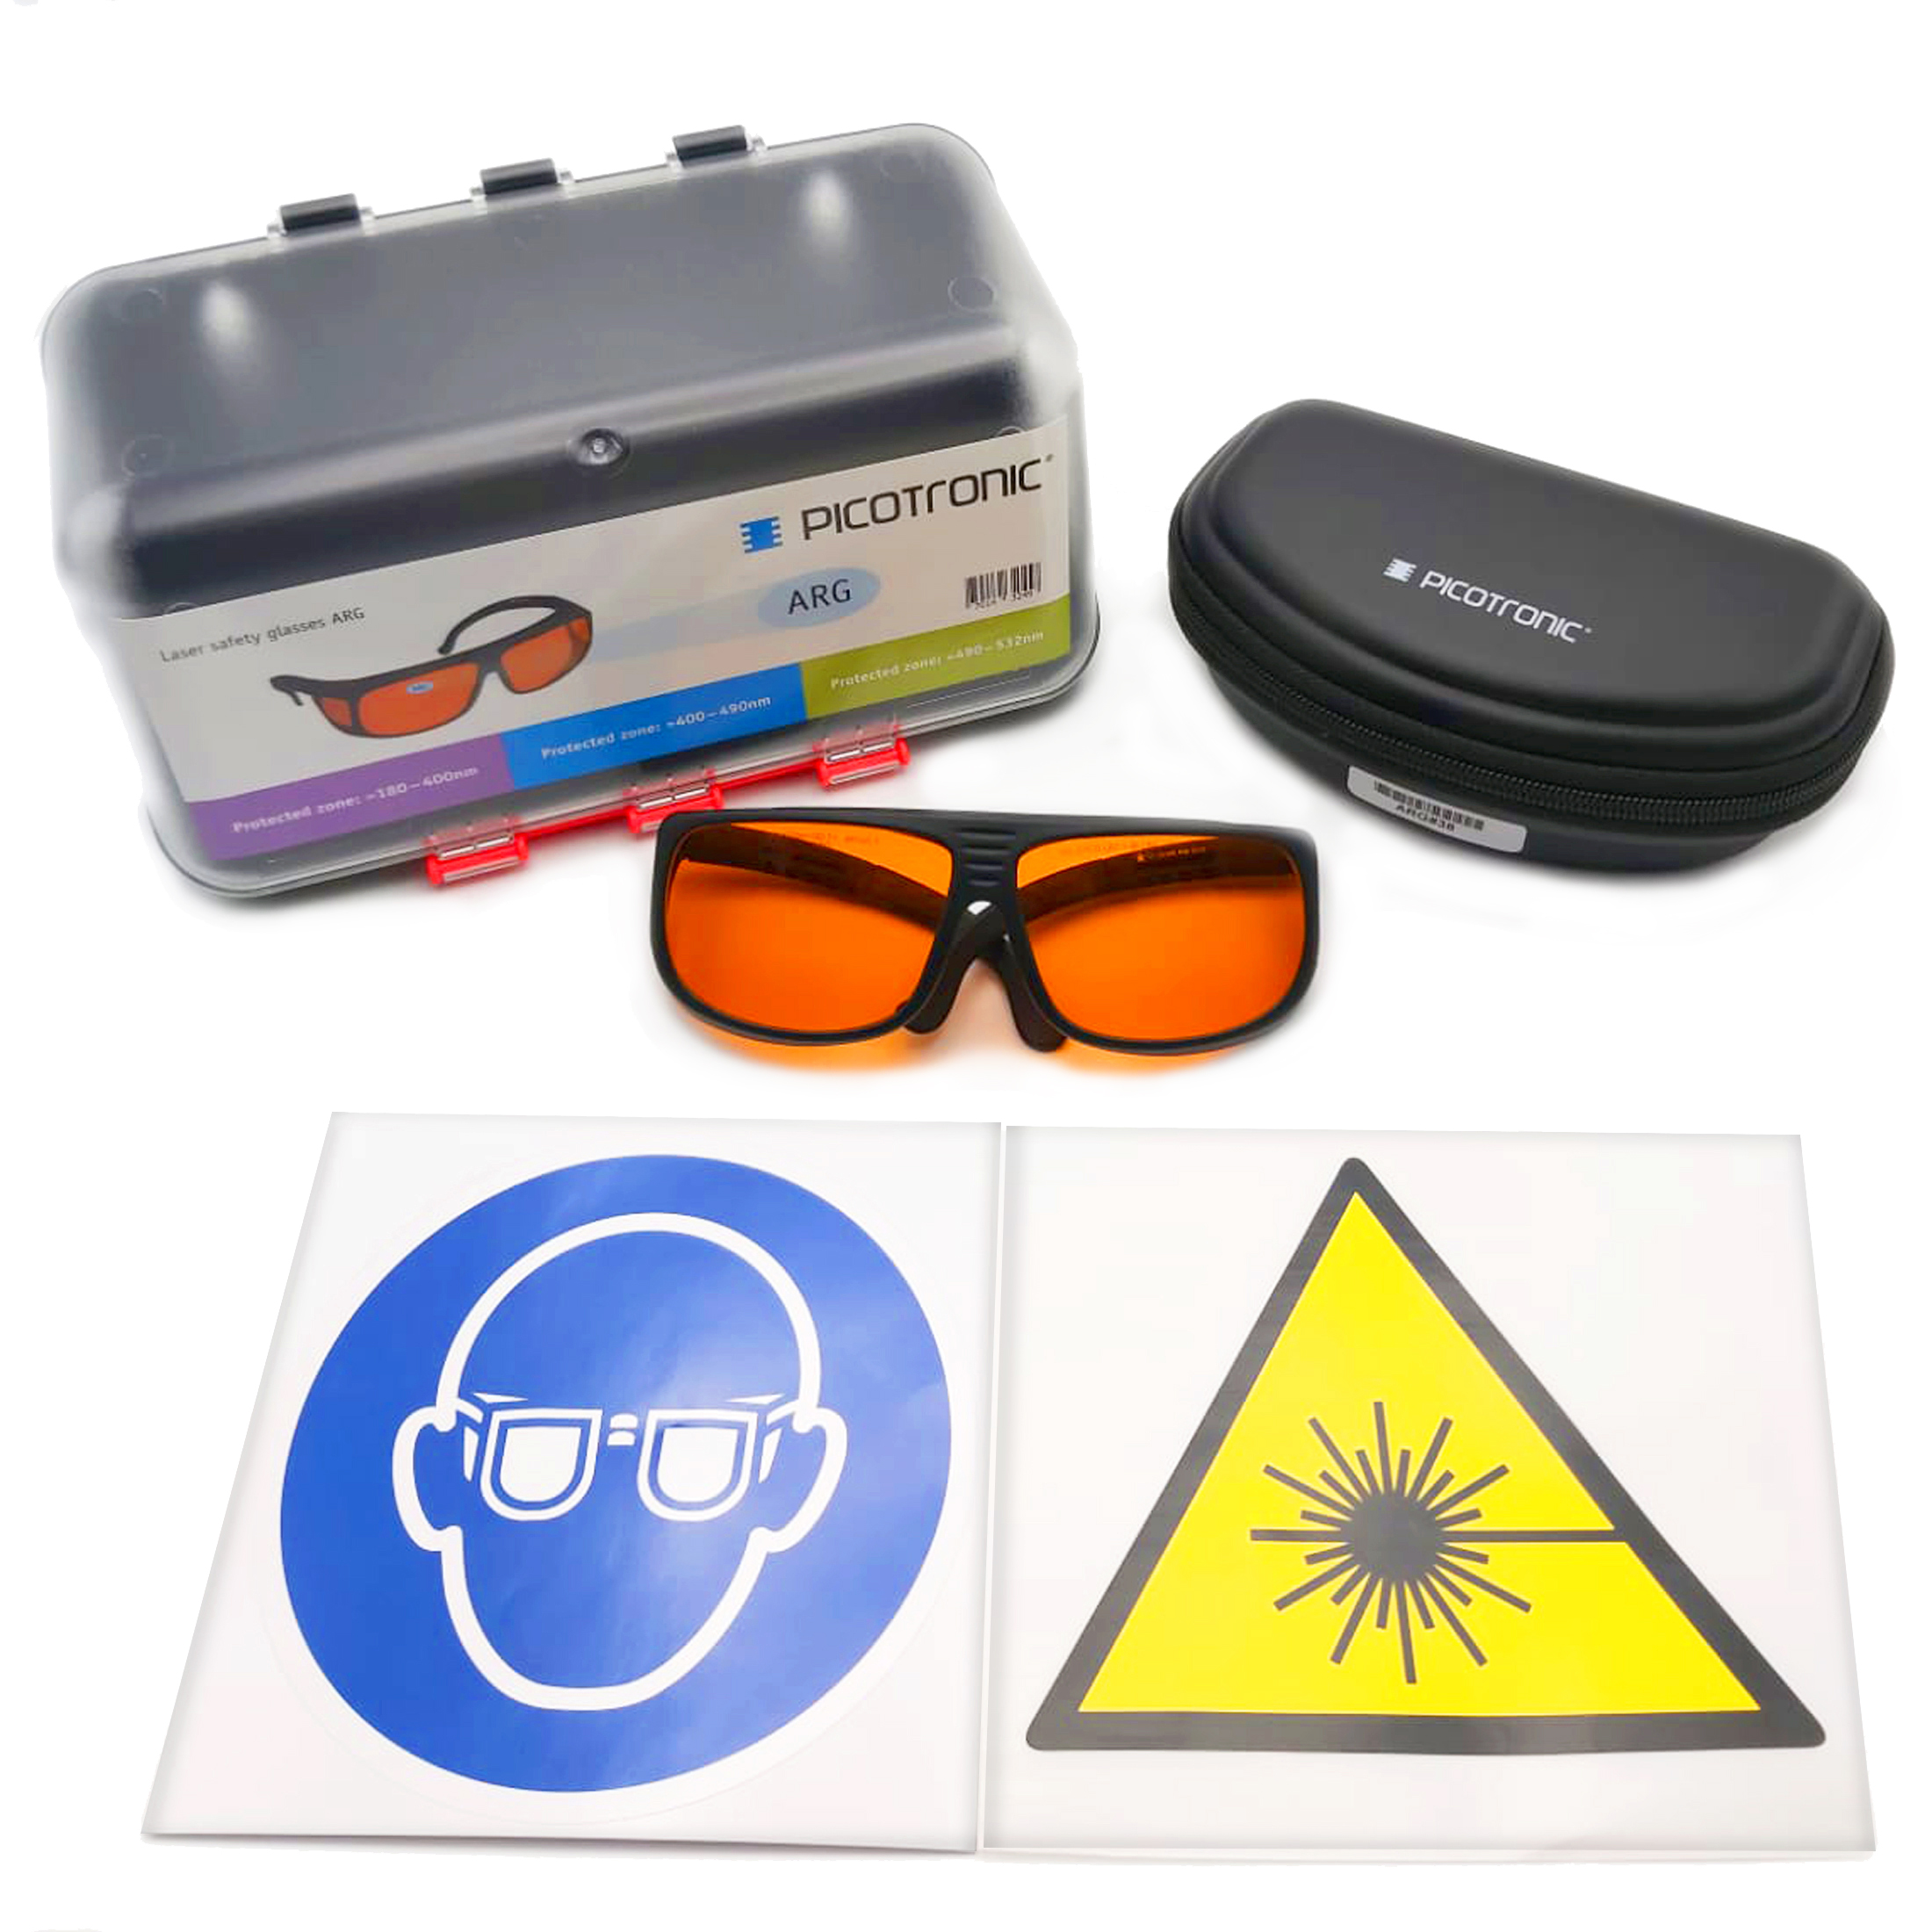 Laserschutzbrillen-Set, zertifiziert nach DIN EN207, 400-532nm. Zum Laserschweißen, Laserschneiden,…